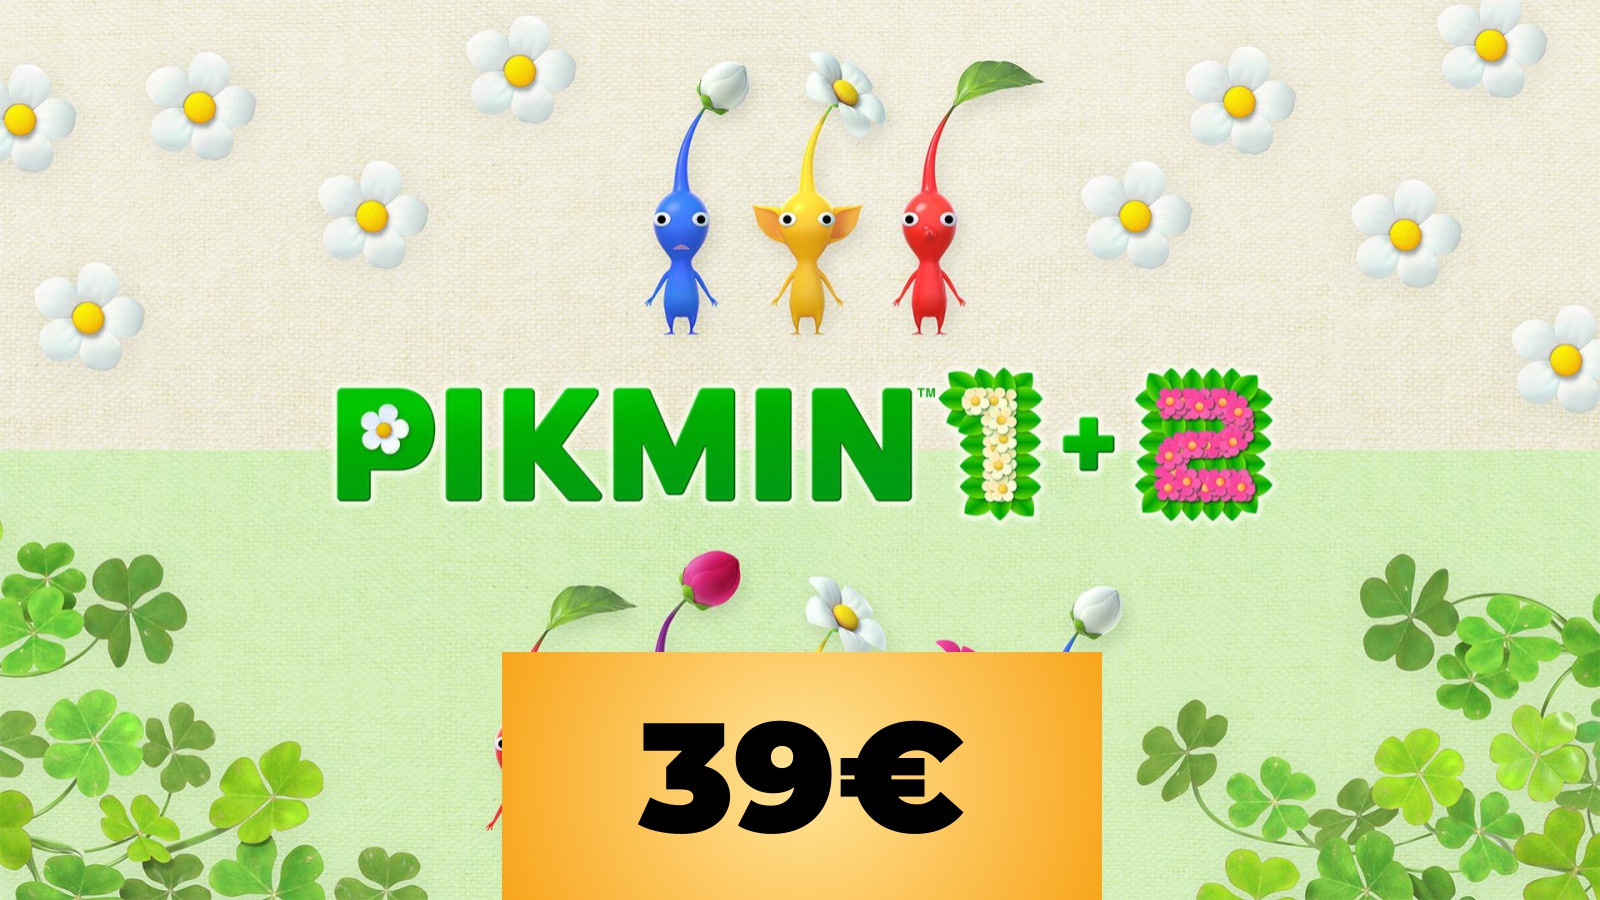 PIKMIN 1+2 per Nintendo Switch è in sconto al prezzo minimo storico tramite Amazon Italia